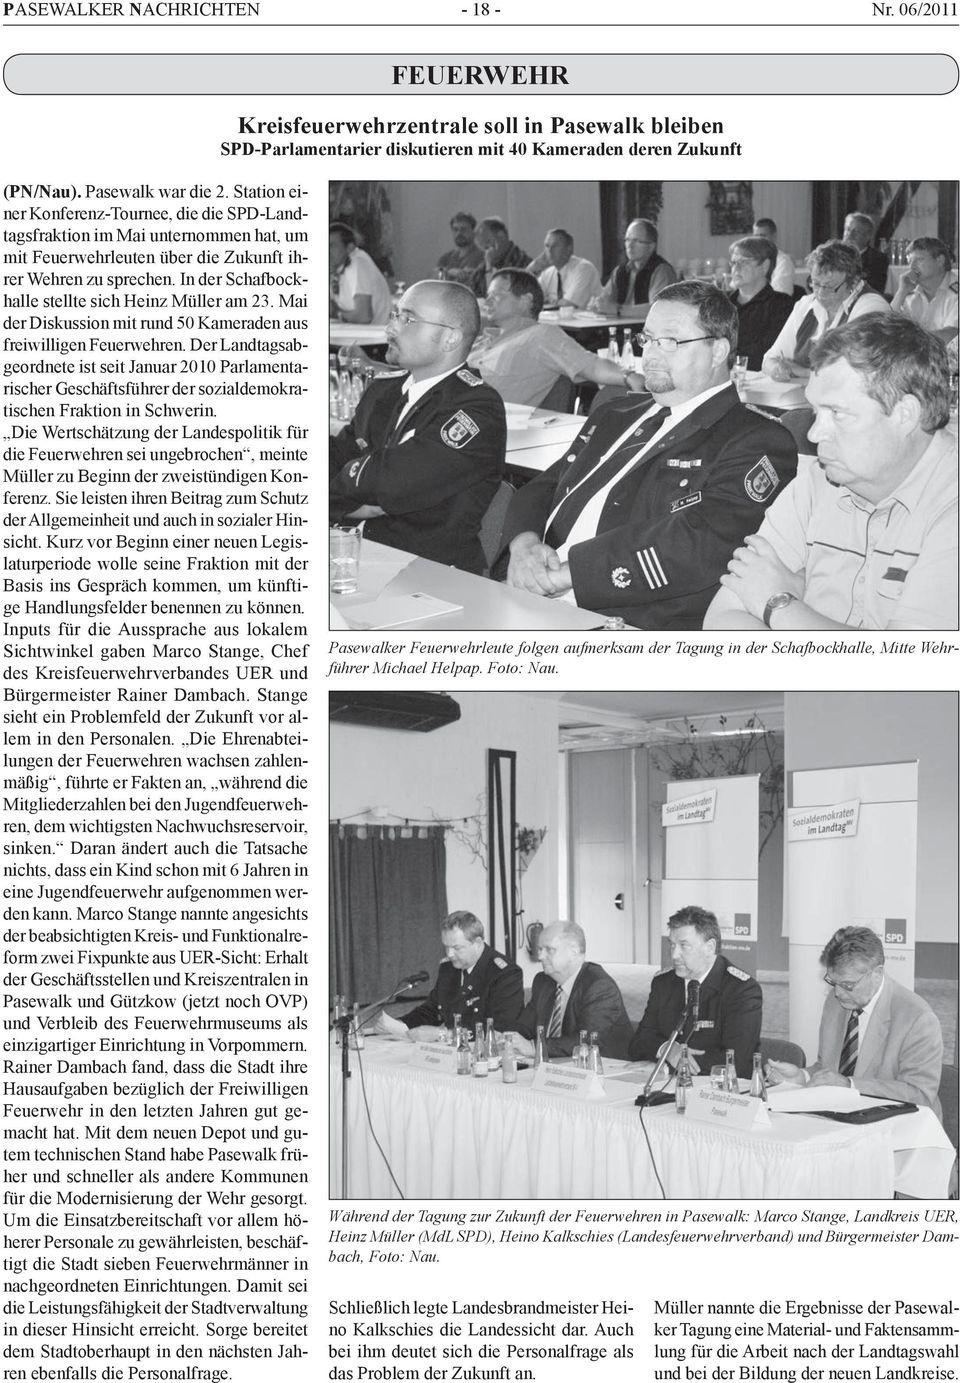 In der Schafbockhalle stellte sich Heinz Müller am 23. Mai der Diskussion mit rund 50 Kameraden aus freiwilligen Feuerwehren.